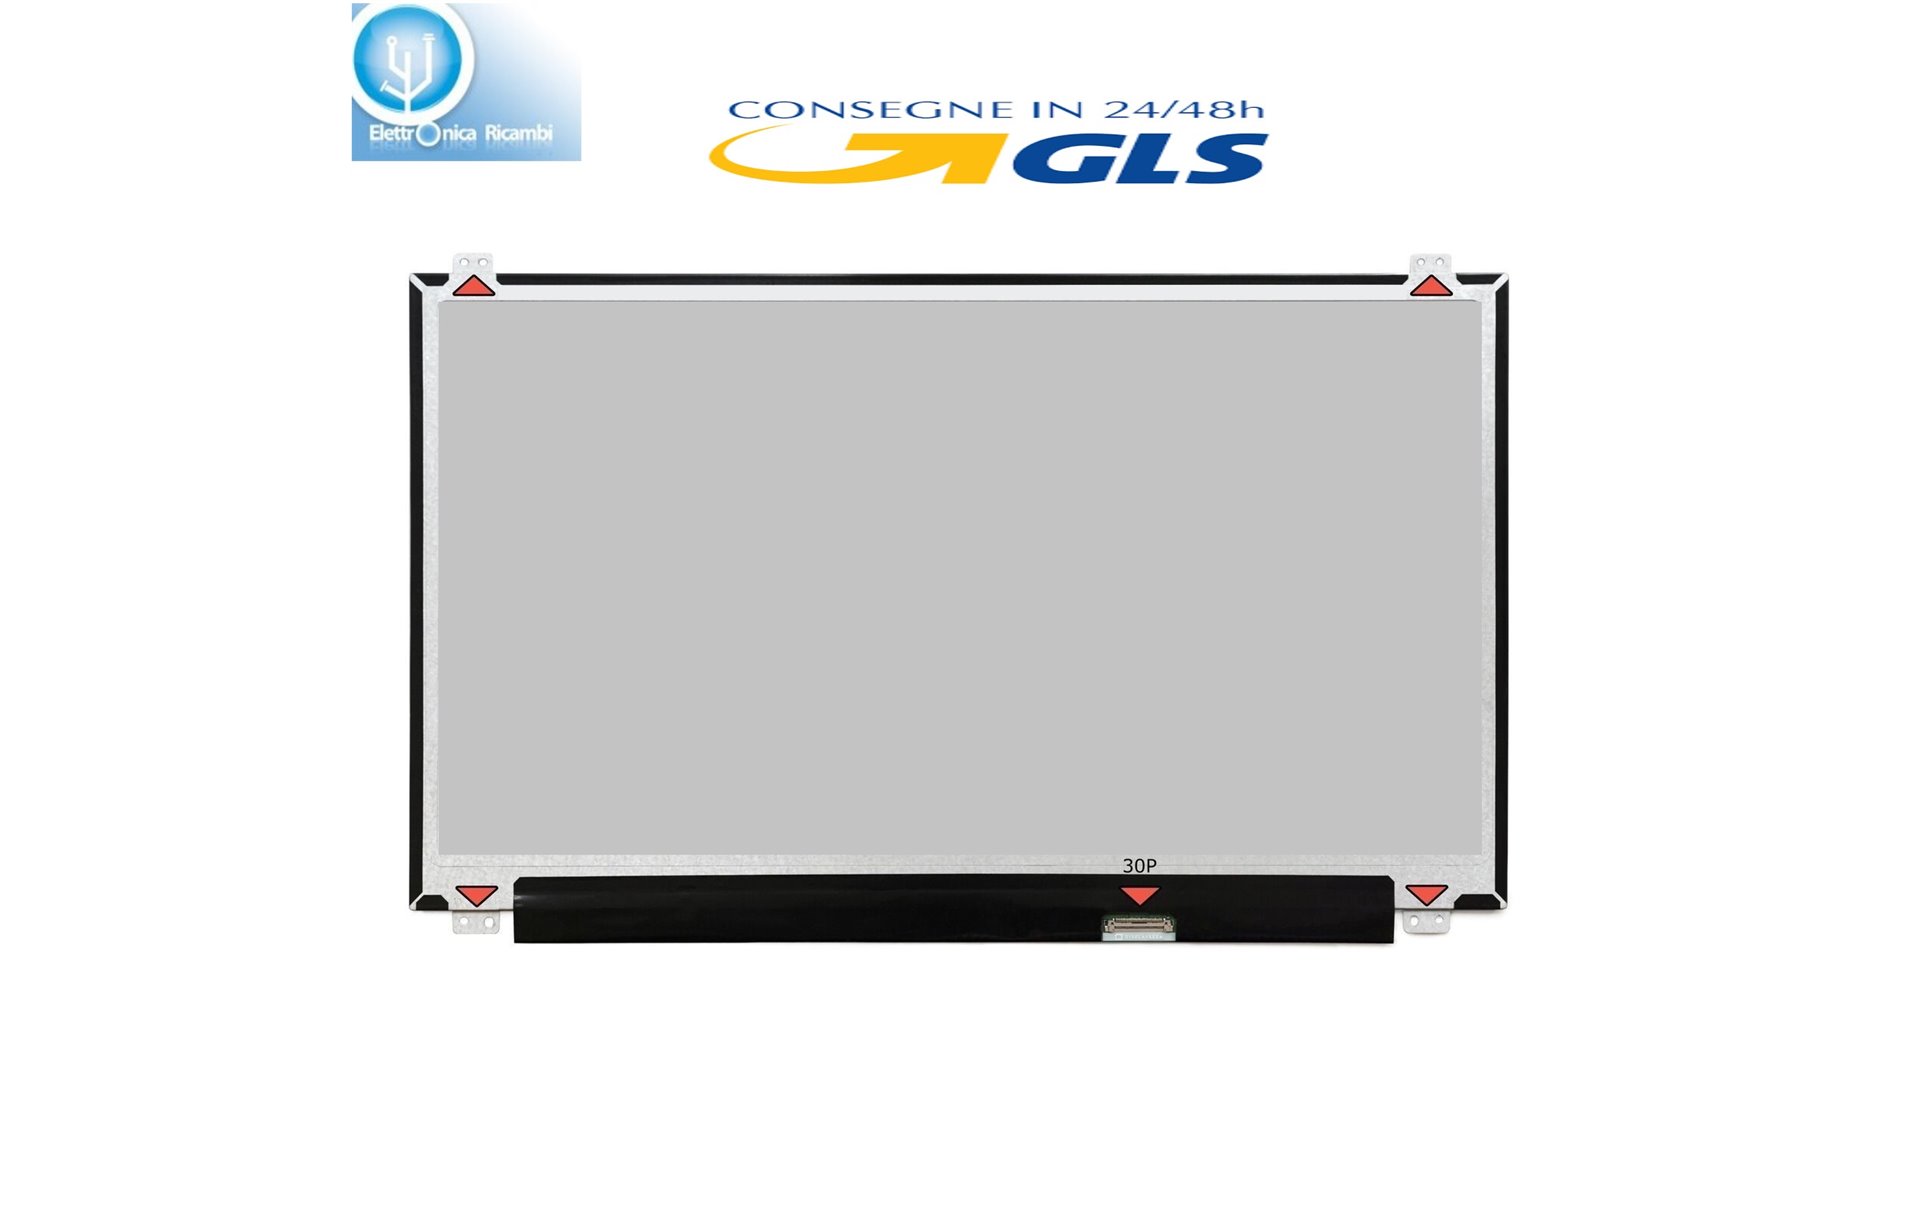 Display LCD ASUS ROG G550JX SERIES 15,6 LED 1366X768 30 PIN